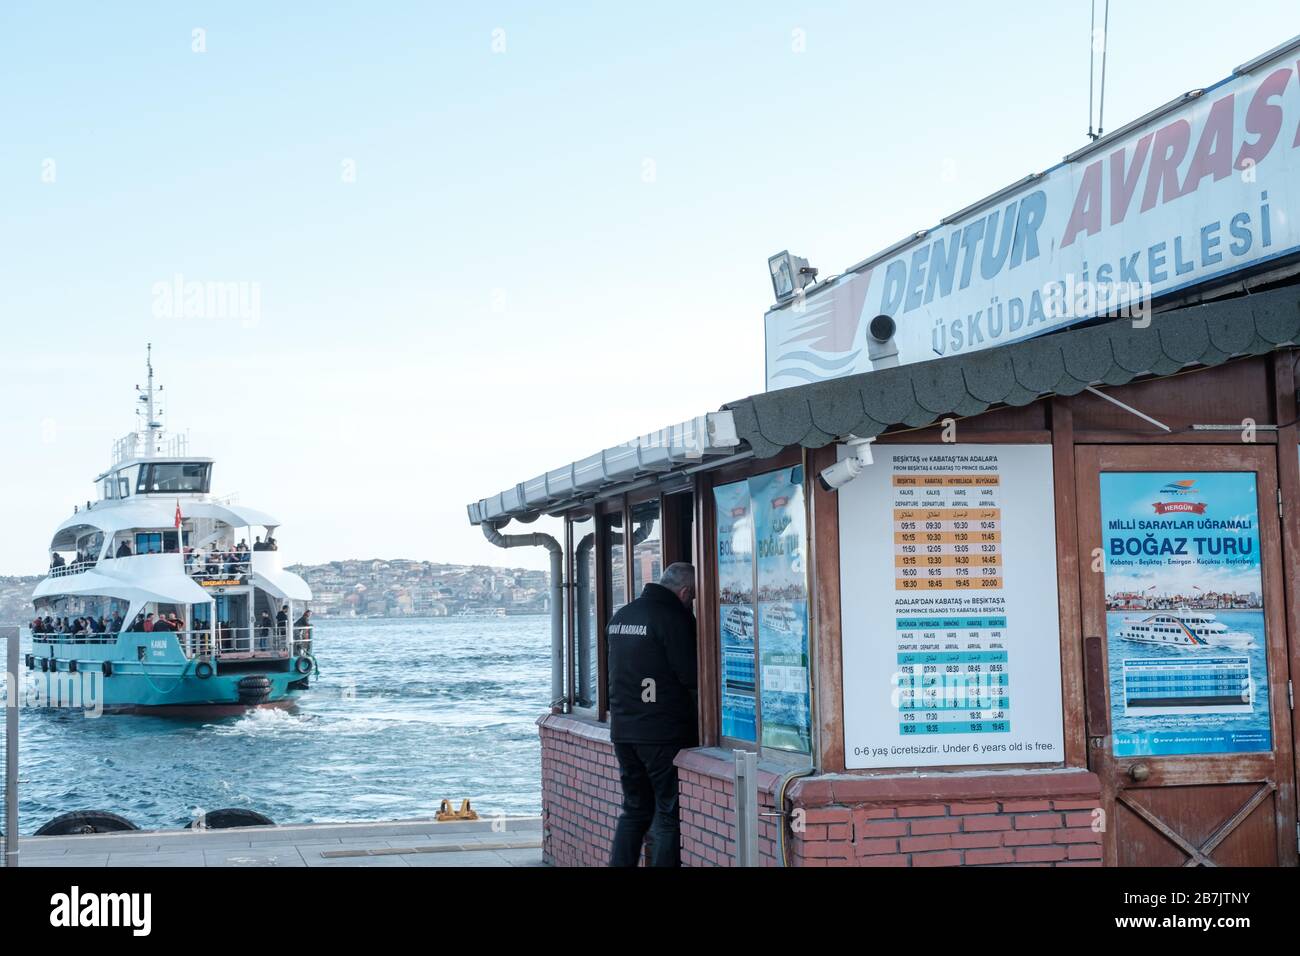 Foto des historischen Fährhafens Besiktas – Uskudar (türkisch:  Beşiktaş-Üsküdar) in Istanbul Türkei. Ein großer Dampfer ist über dem Meer  zu sehen Stockfotografie - Alamy